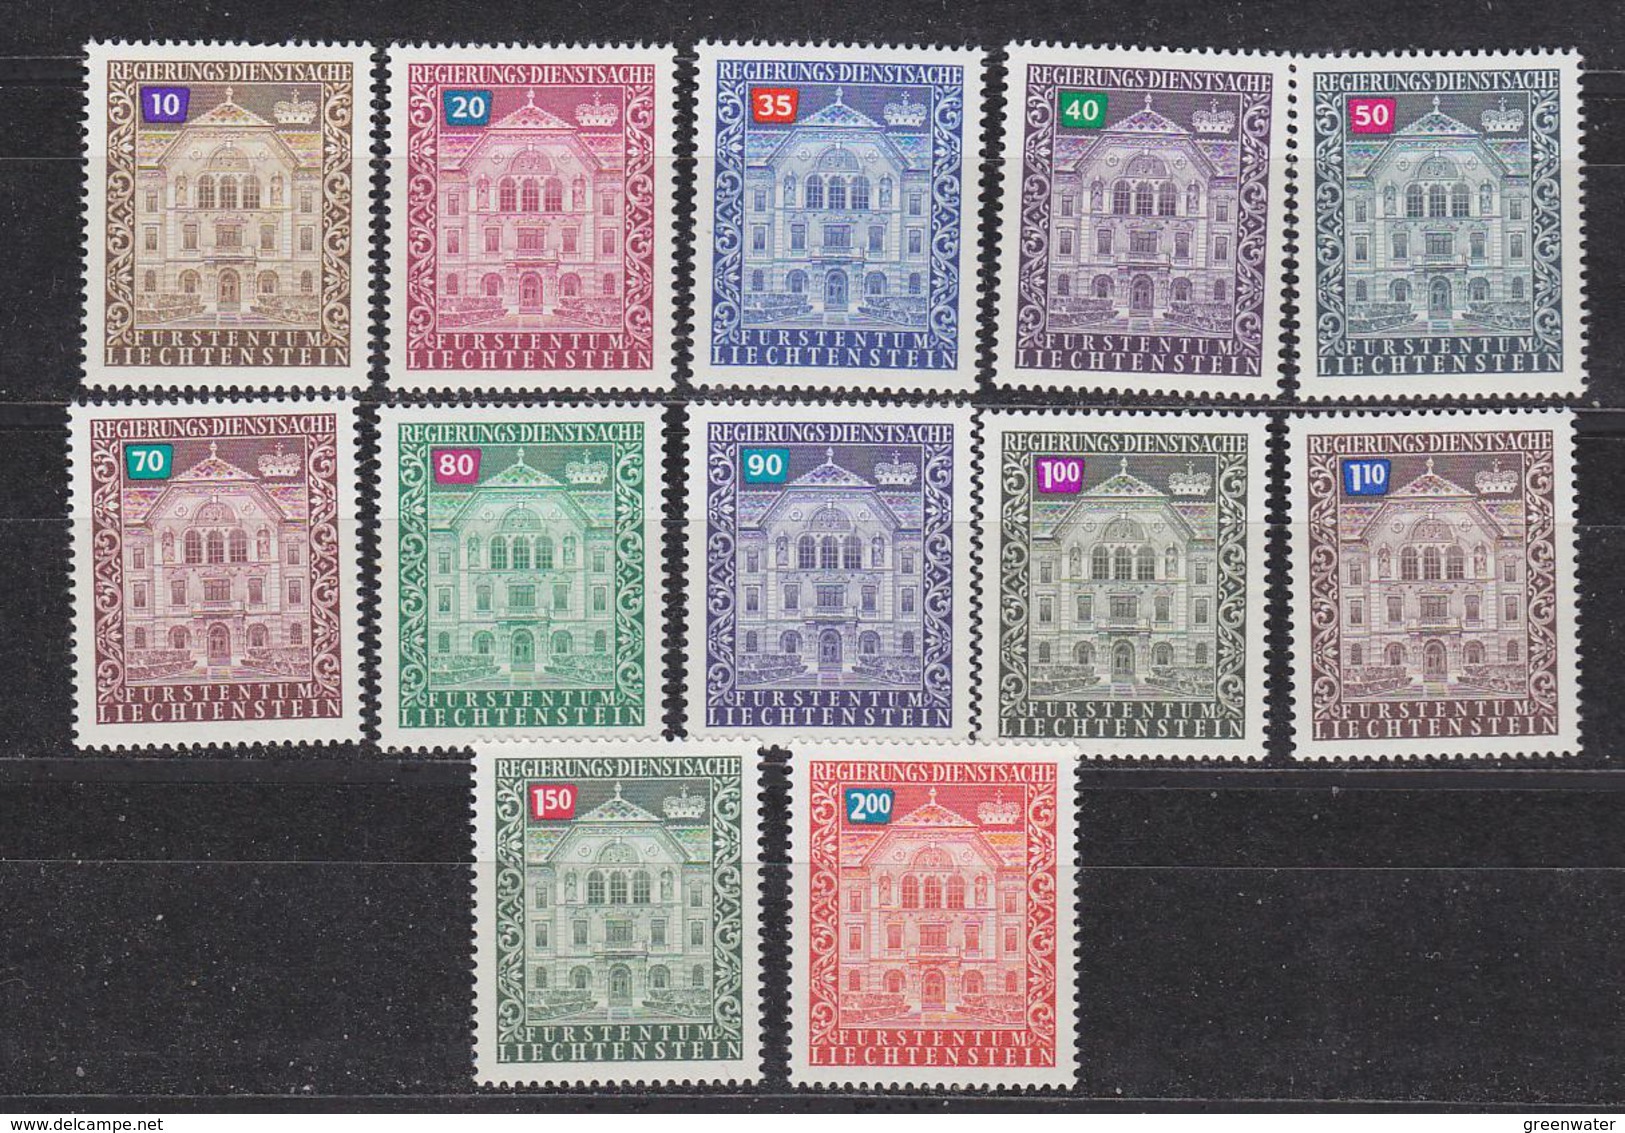 Liechtenstein 1976 Dienstmarken 12v ** Mnh (43933) PROMOTION - Dienstzegels